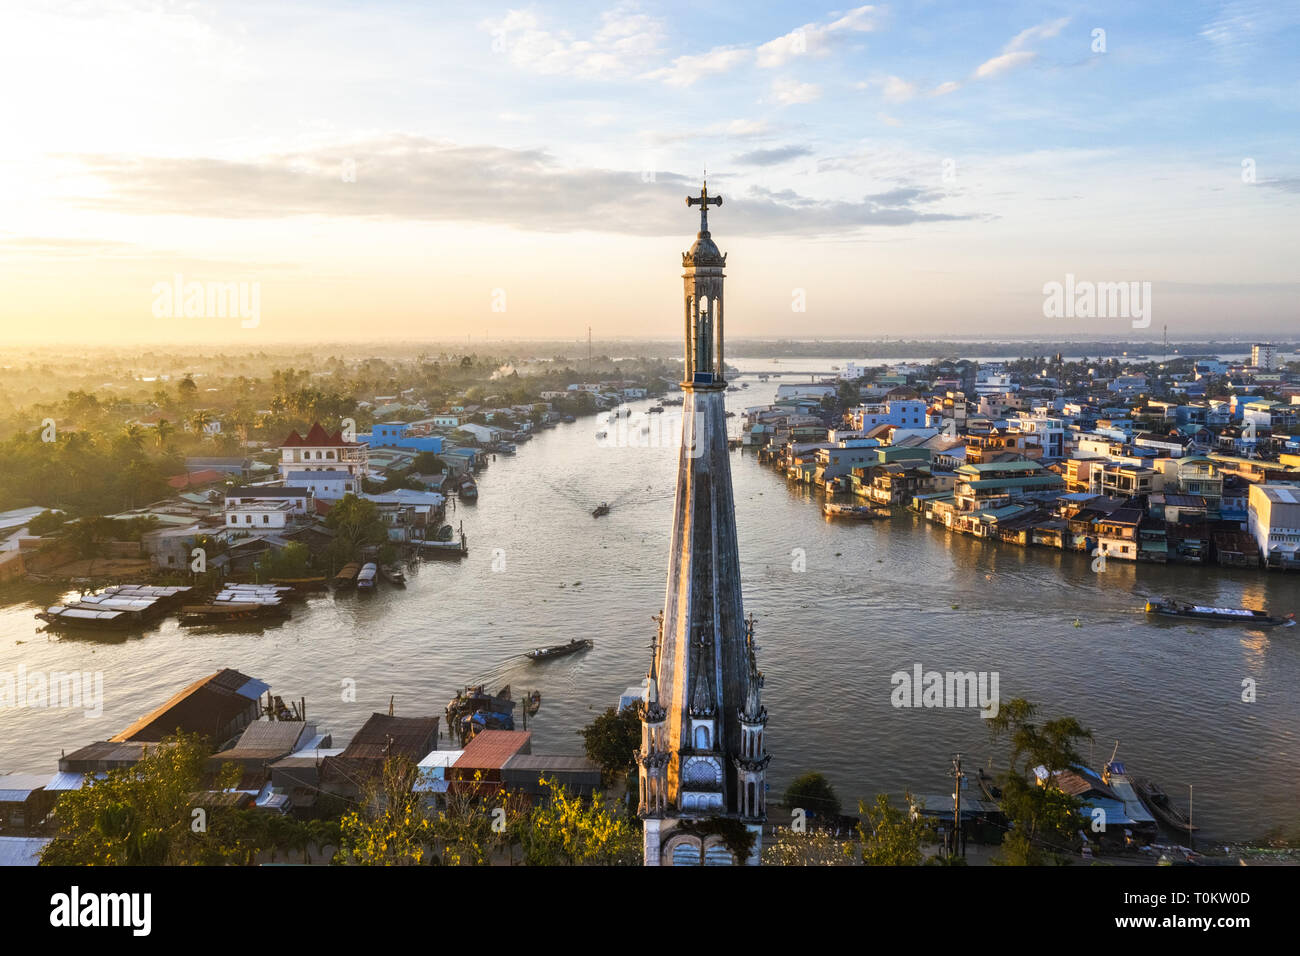 Luftaufnahme von Cai Kirche im Mekong Delta, In front Cai schwimmenden Markt. Glockenturm und die Statue der Gottesmutter. Tien Giang, Vietnam Stockfoto